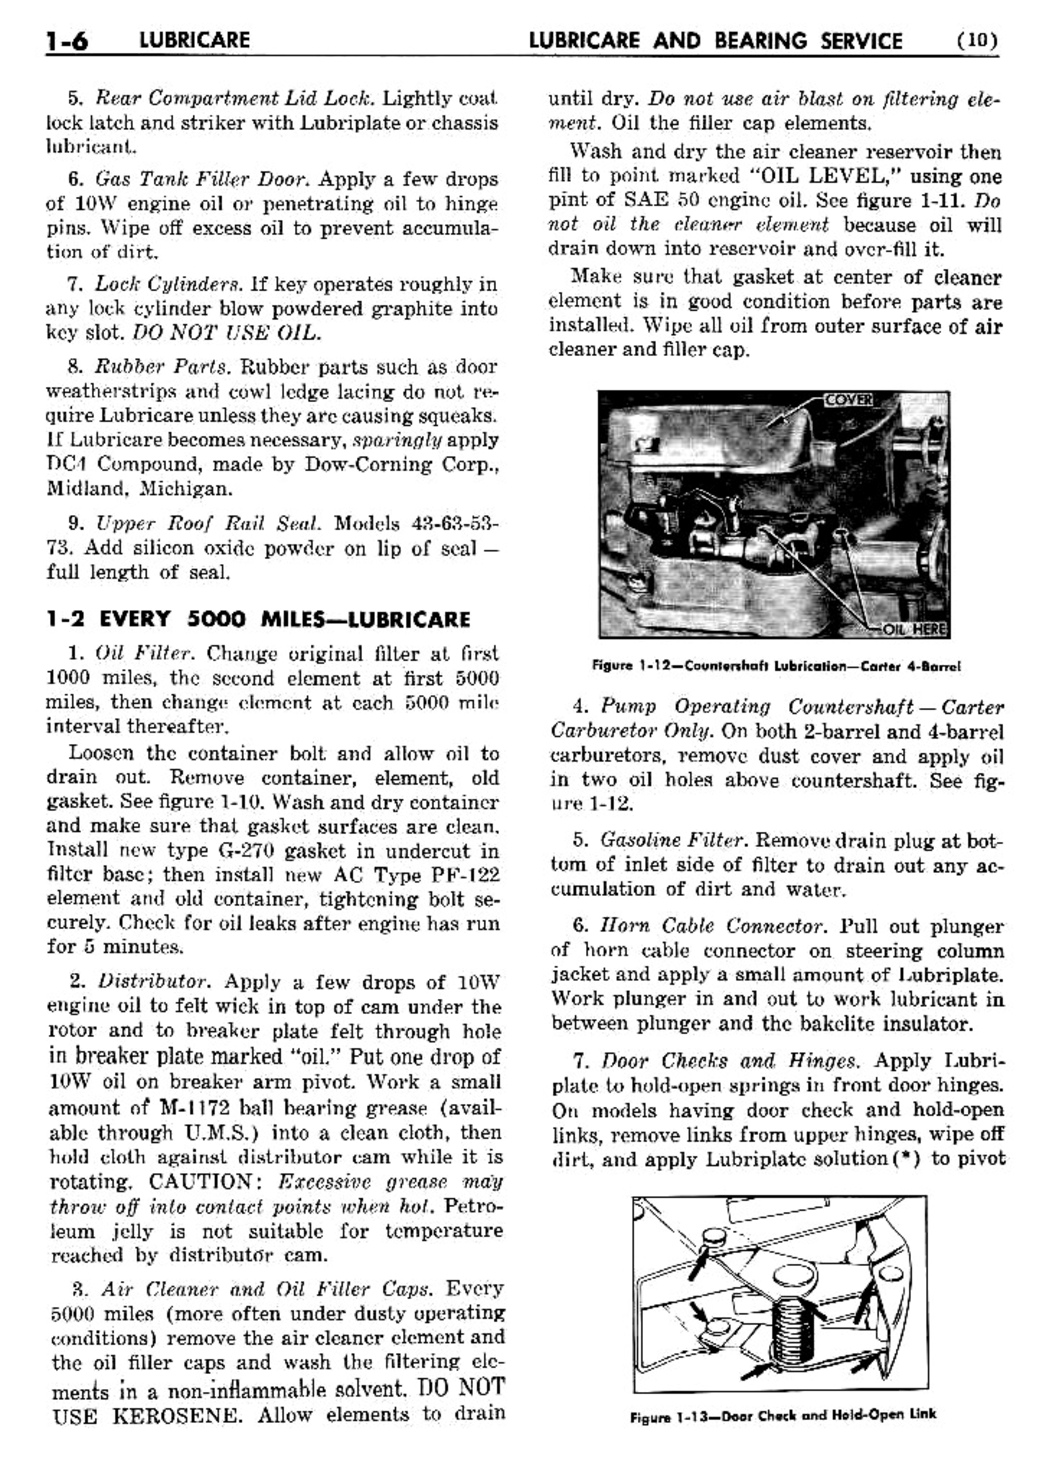 n_02 1956 Buick Shop Manual - Lubricare-006-006.jpg